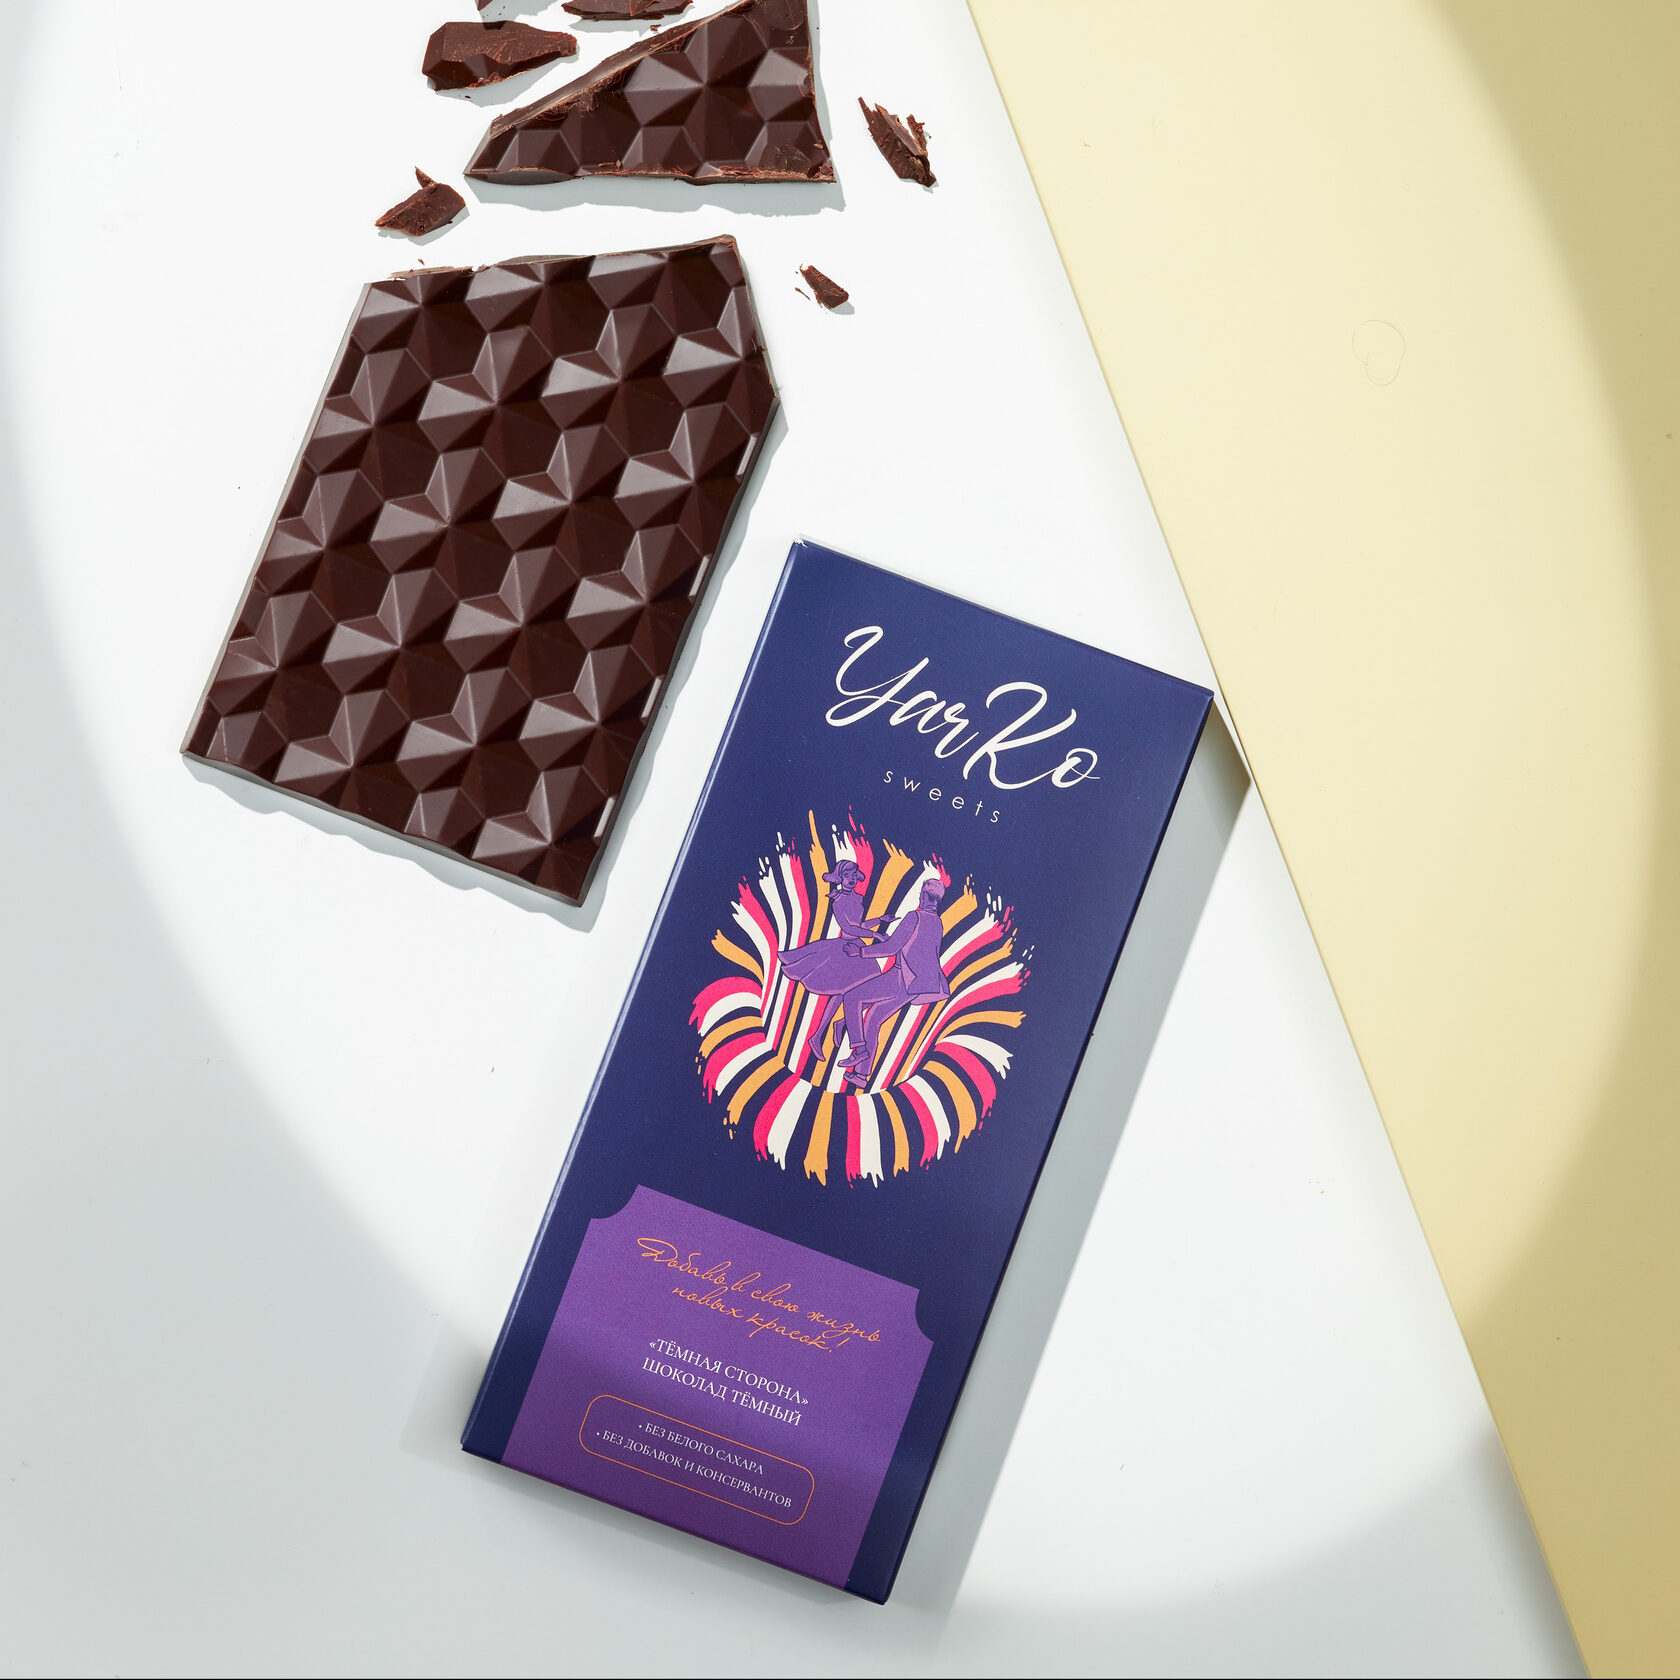 Yarko sweets, полезный шоколад, натуральный шоколад, темный 75% шоколад, темный шоколад, темно-синяя упаковка, свет, упаковка шоколада, сломанный шоколад, кусочки шоколада